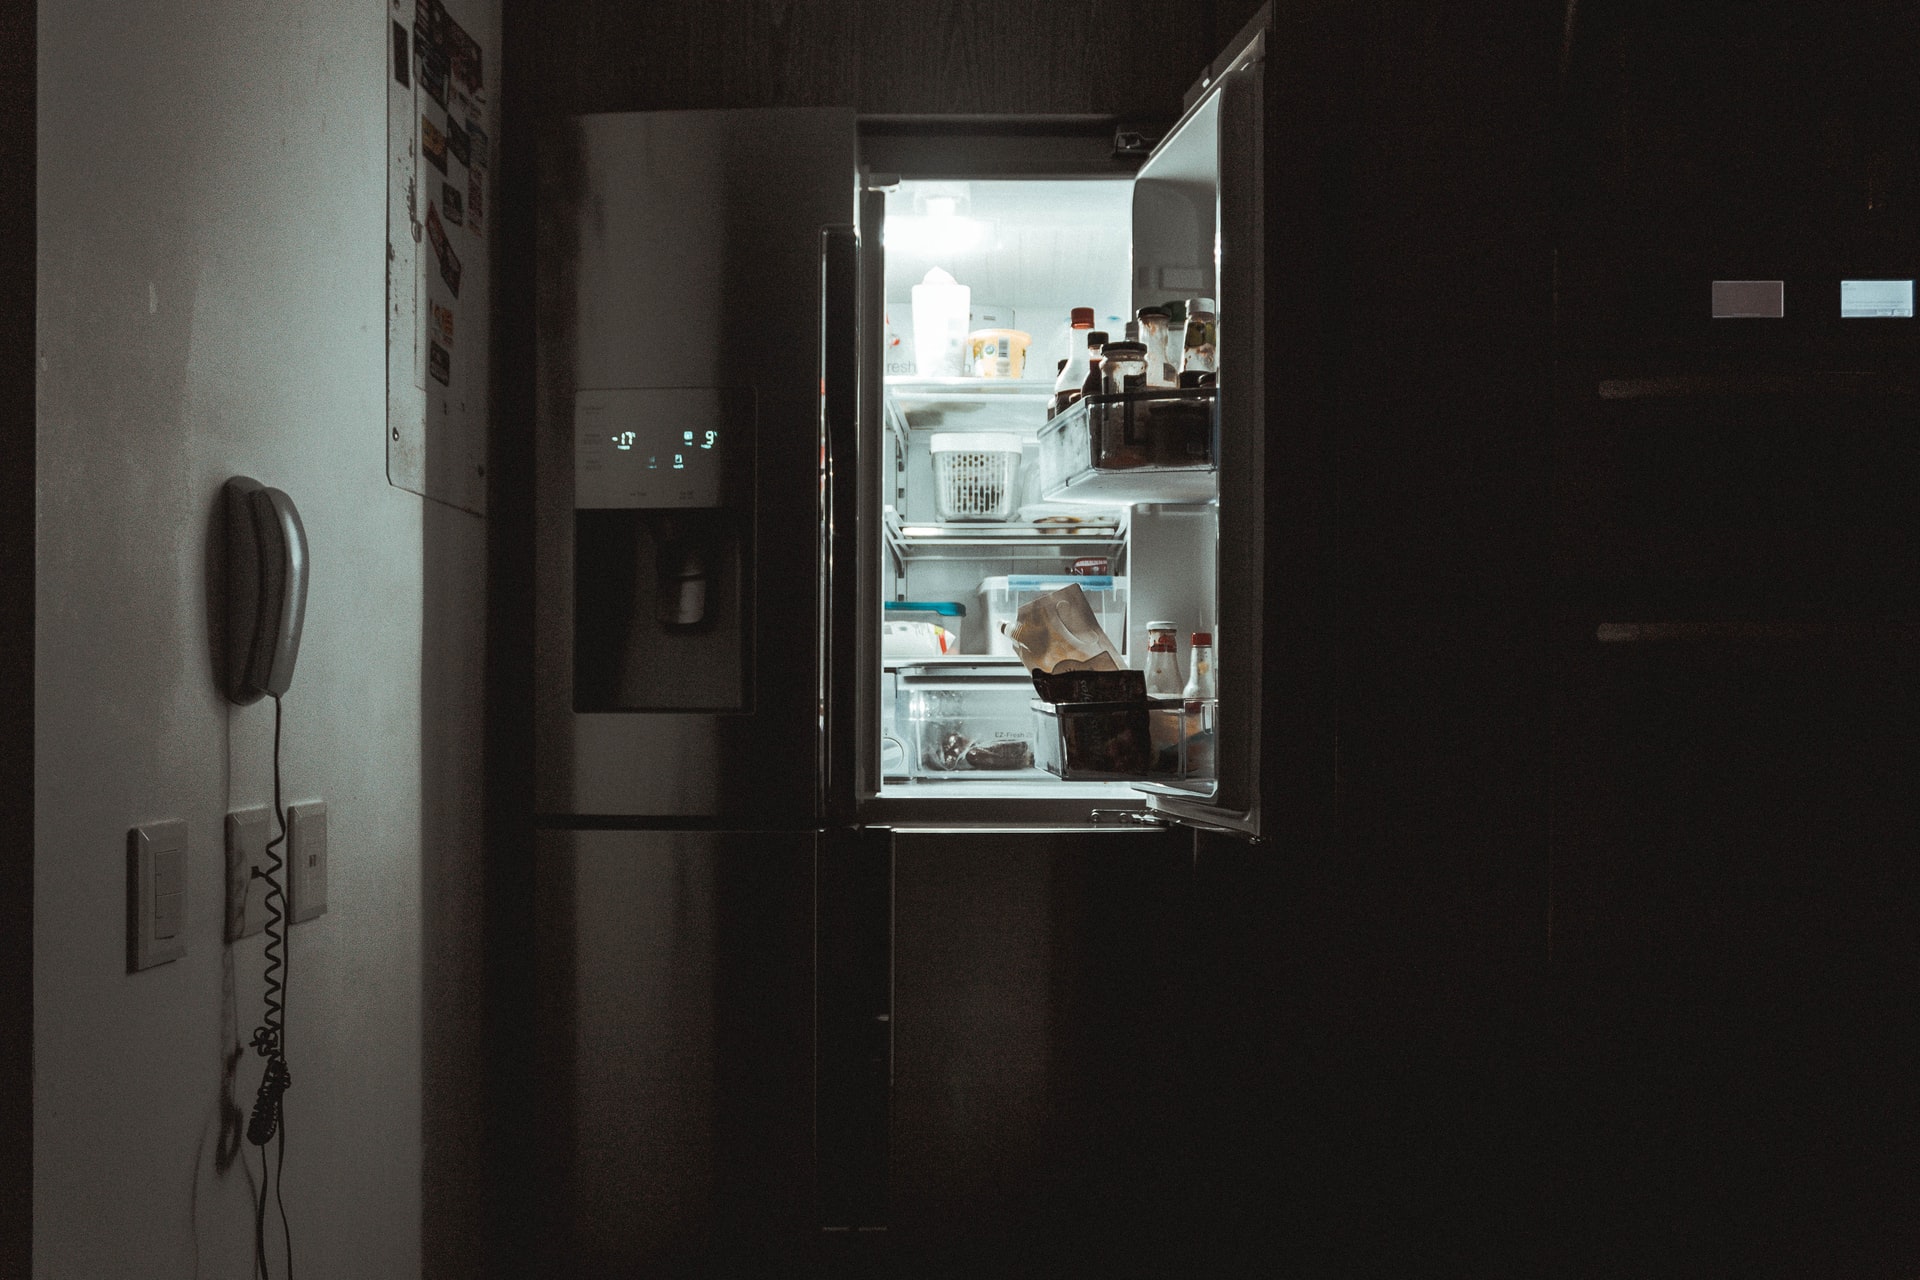 Kapağı açık buz dolabı karanlık mutfağı aydınlatıyor.